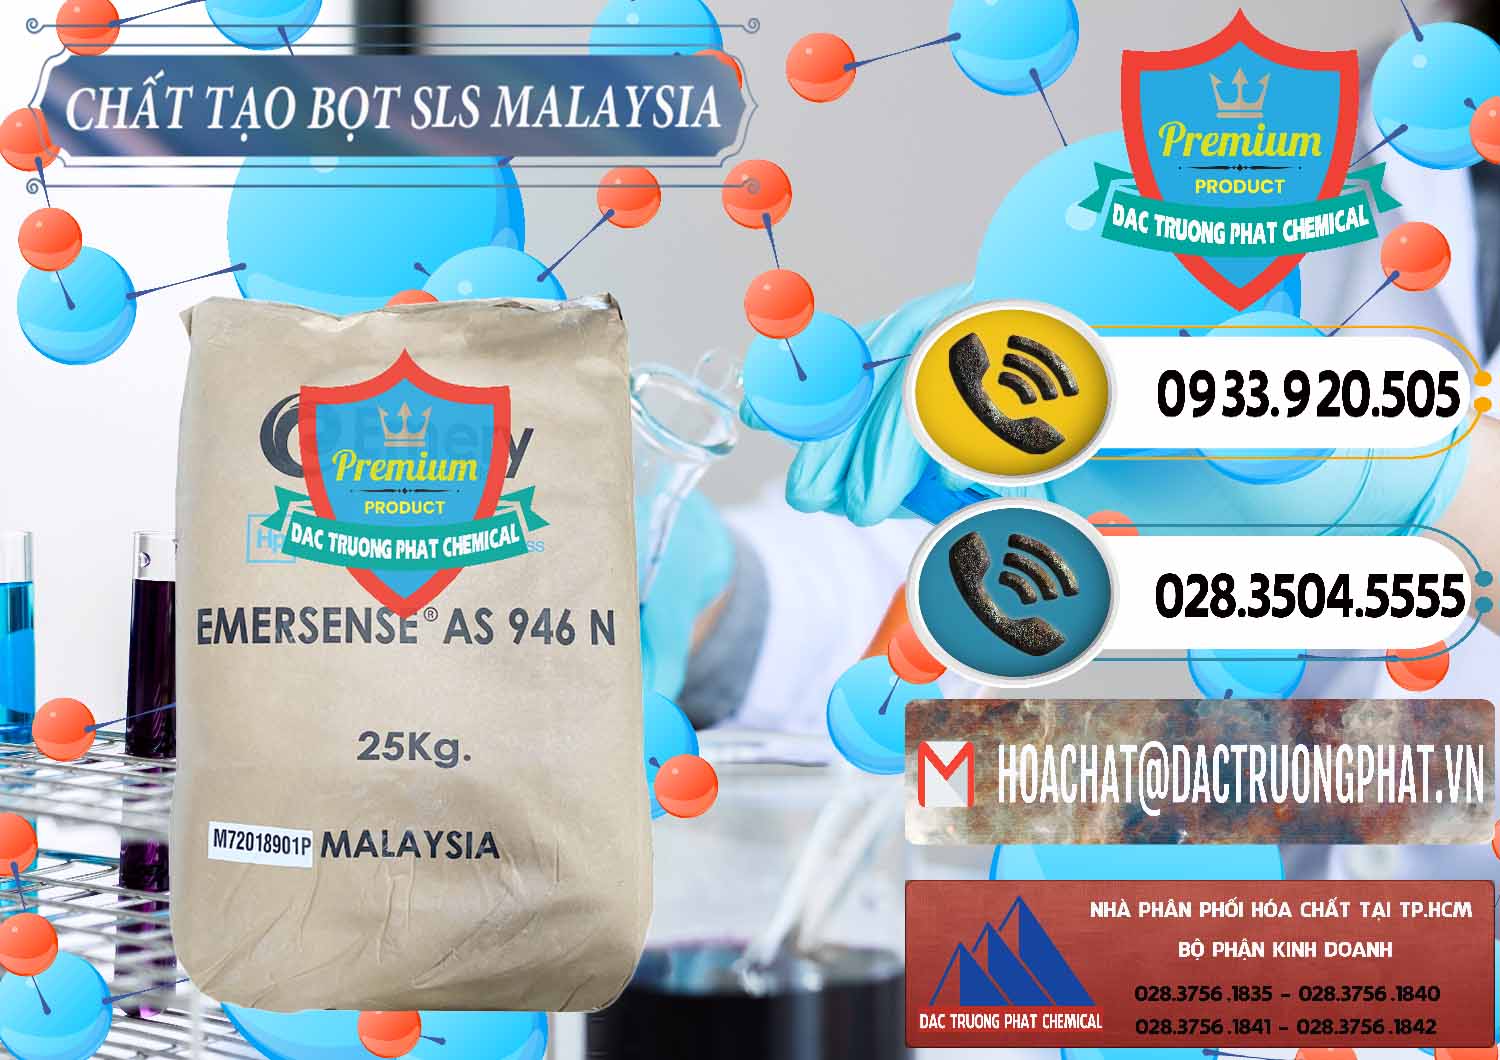 Nơi nhập khẩu - bán Chất Tạo Bọt SLS Emery - Emersense AS 946N Mã Lai Malaysia - 0423 - Công ty chuyên phân phối _ nhập khẩu hóa chất tại TP.HCM - hoachatdetnhuom.vn